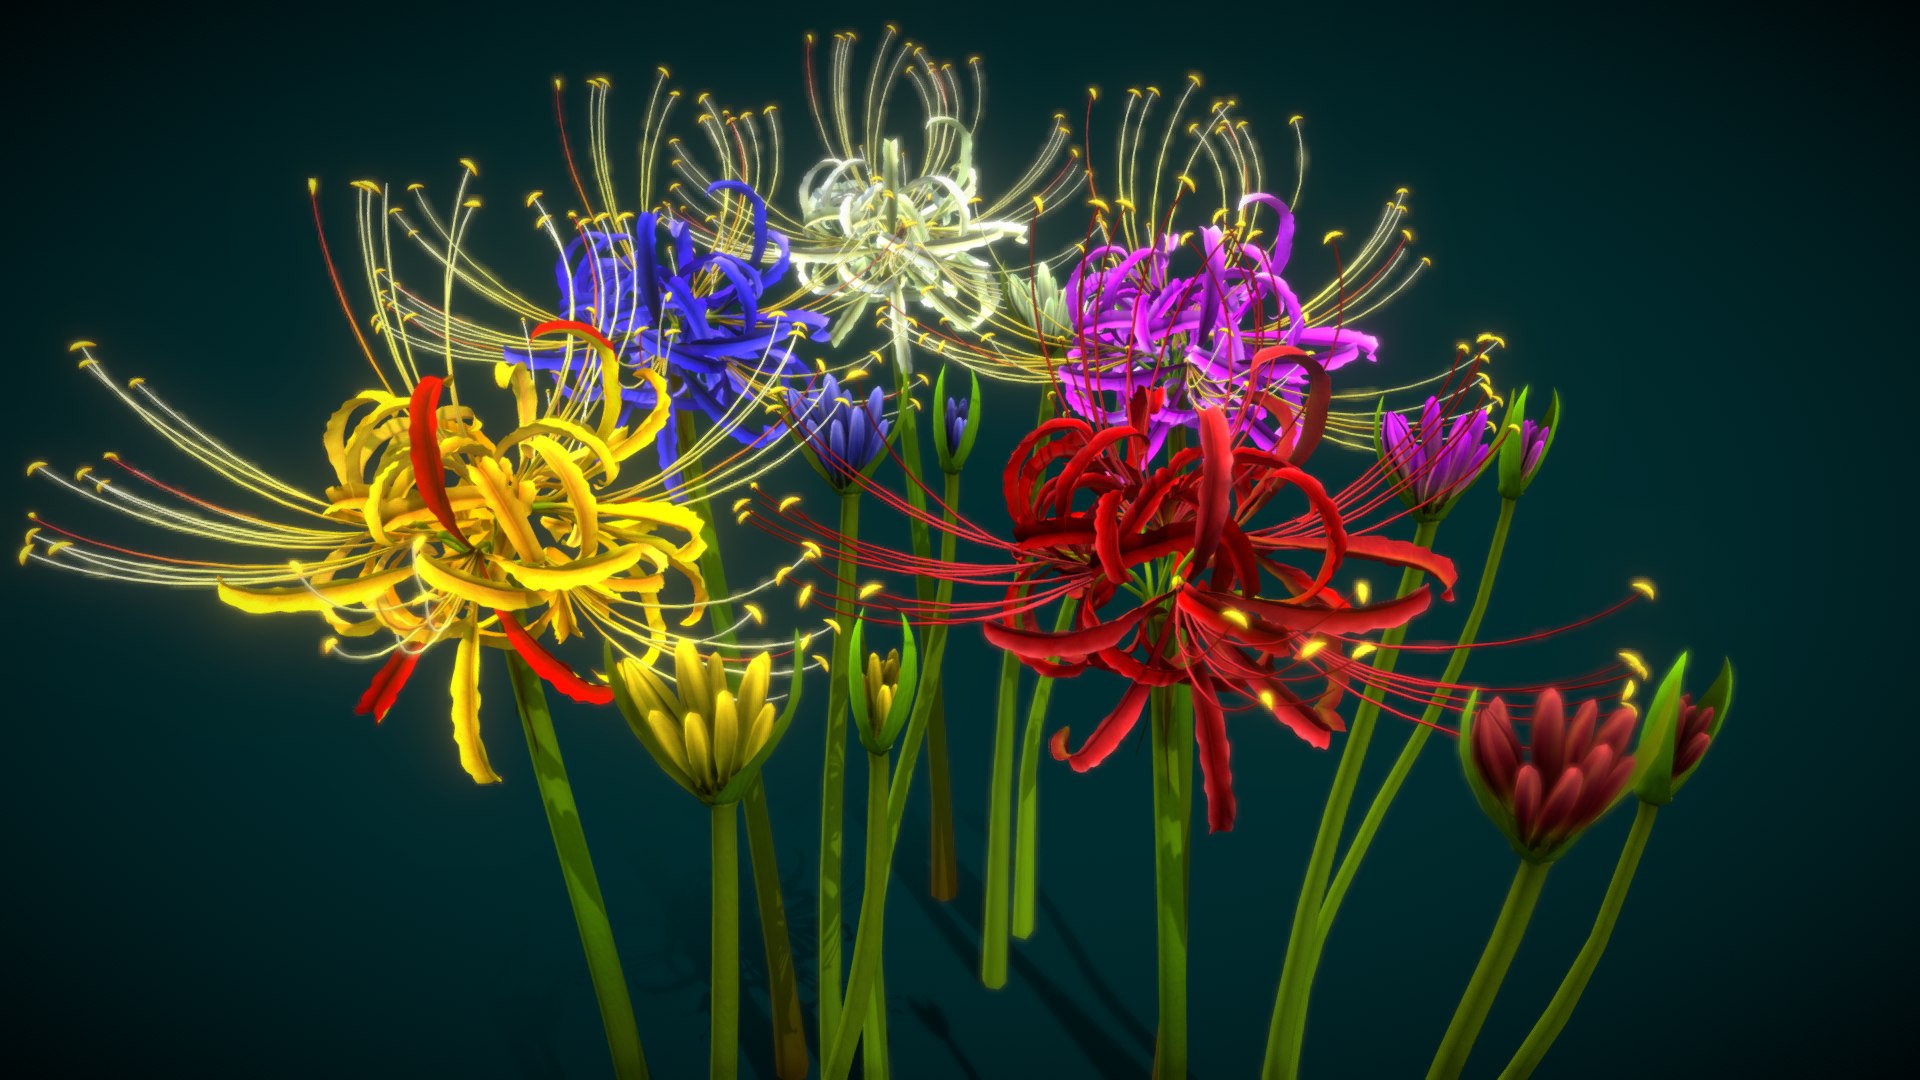 3D Flower Lycoris Radiata Model - TurboSquid 2133061